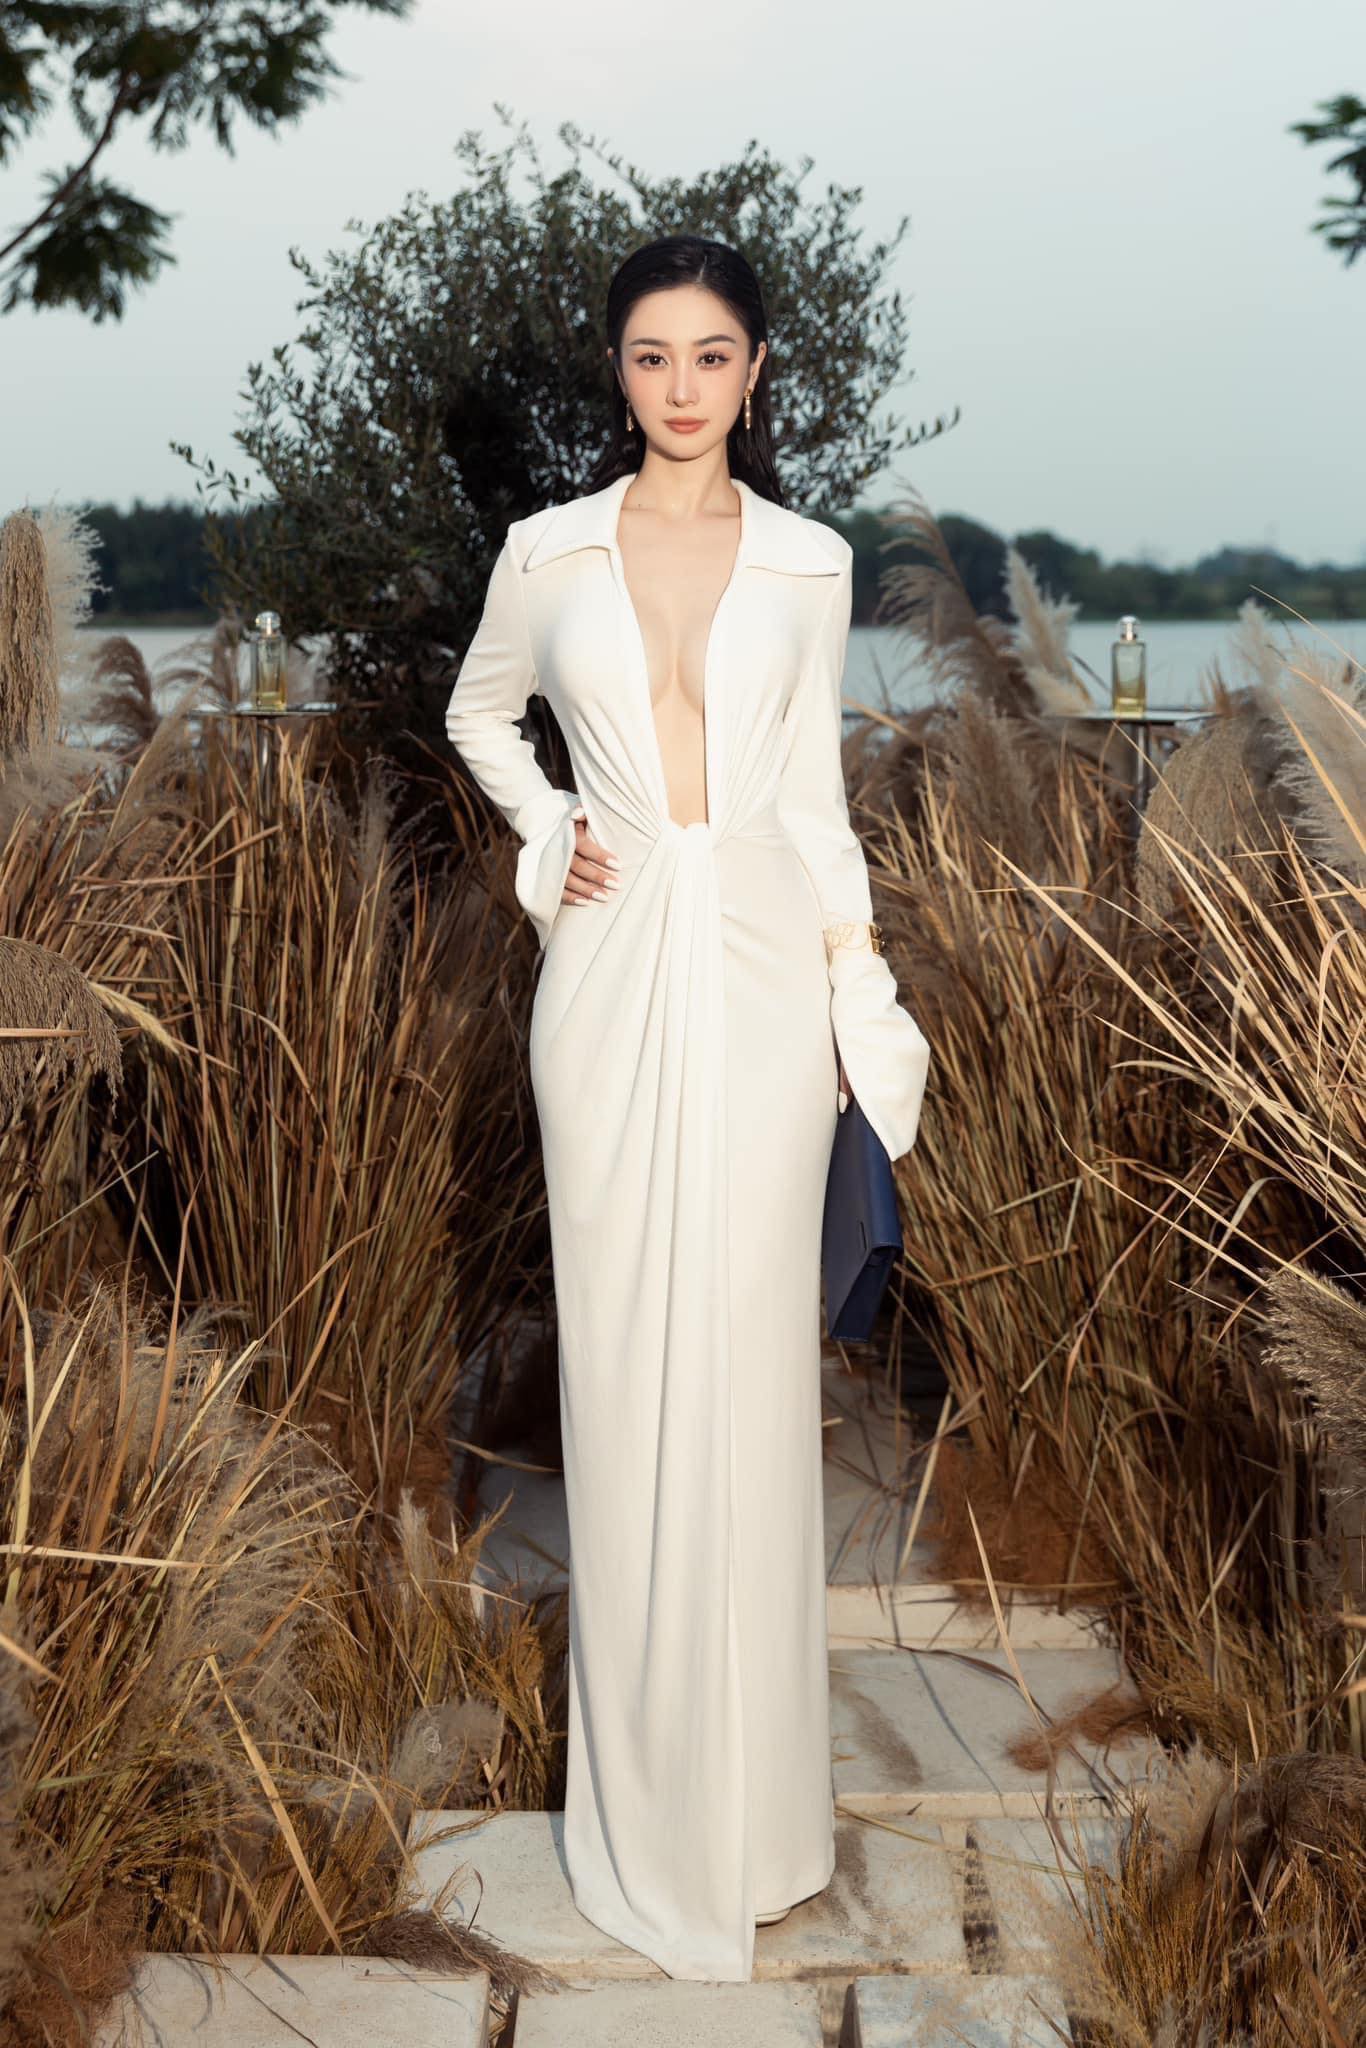 Để an toàn trong kiểu váy này, Jun Vũ phải sử dụng biện pháp an toàn để mép cổ váy không bị xô lệch.